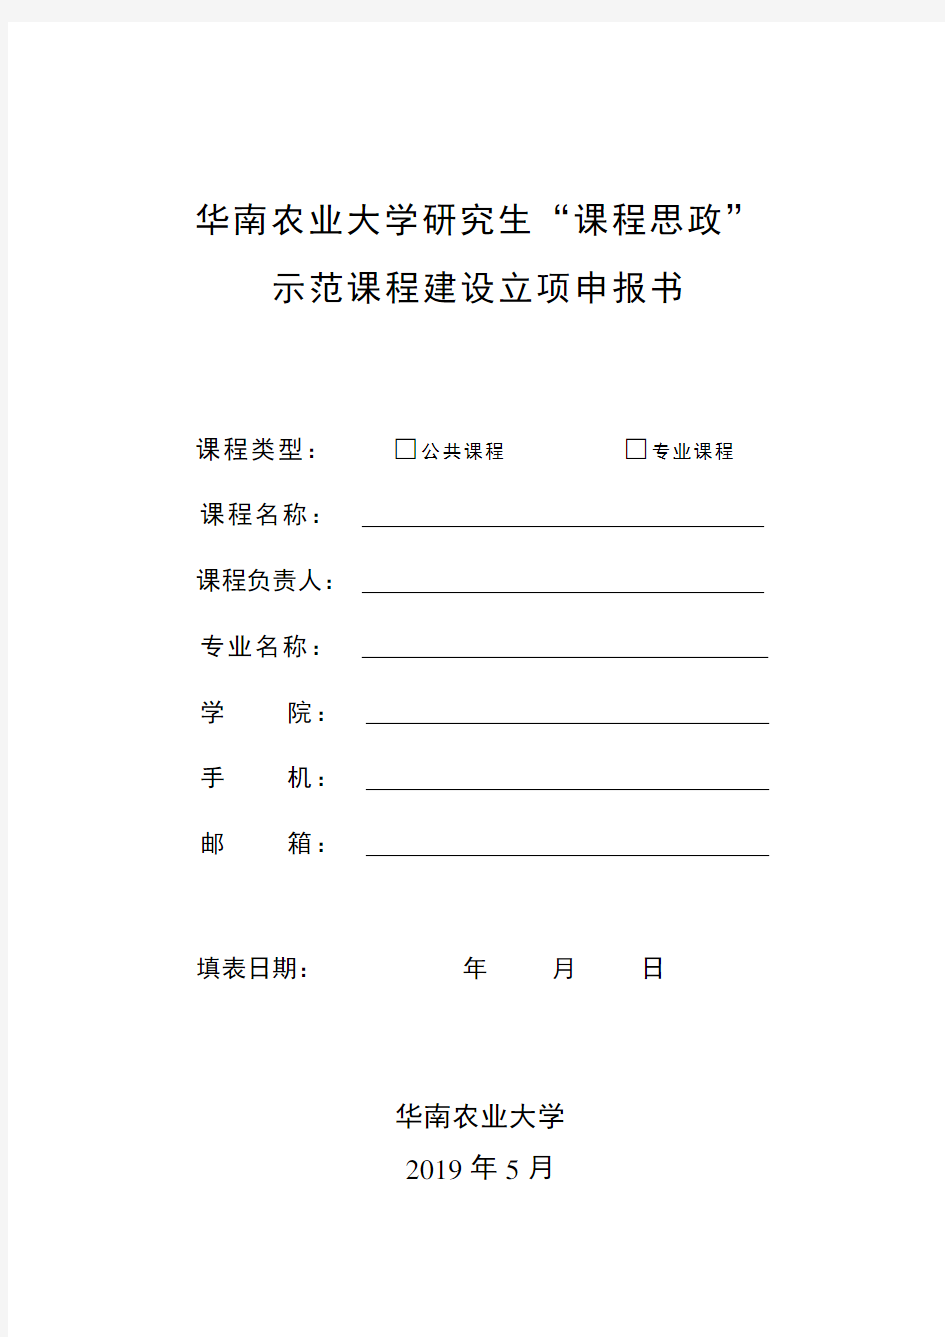 华南农业大学研究生课程思政示范课程建设立项申报书